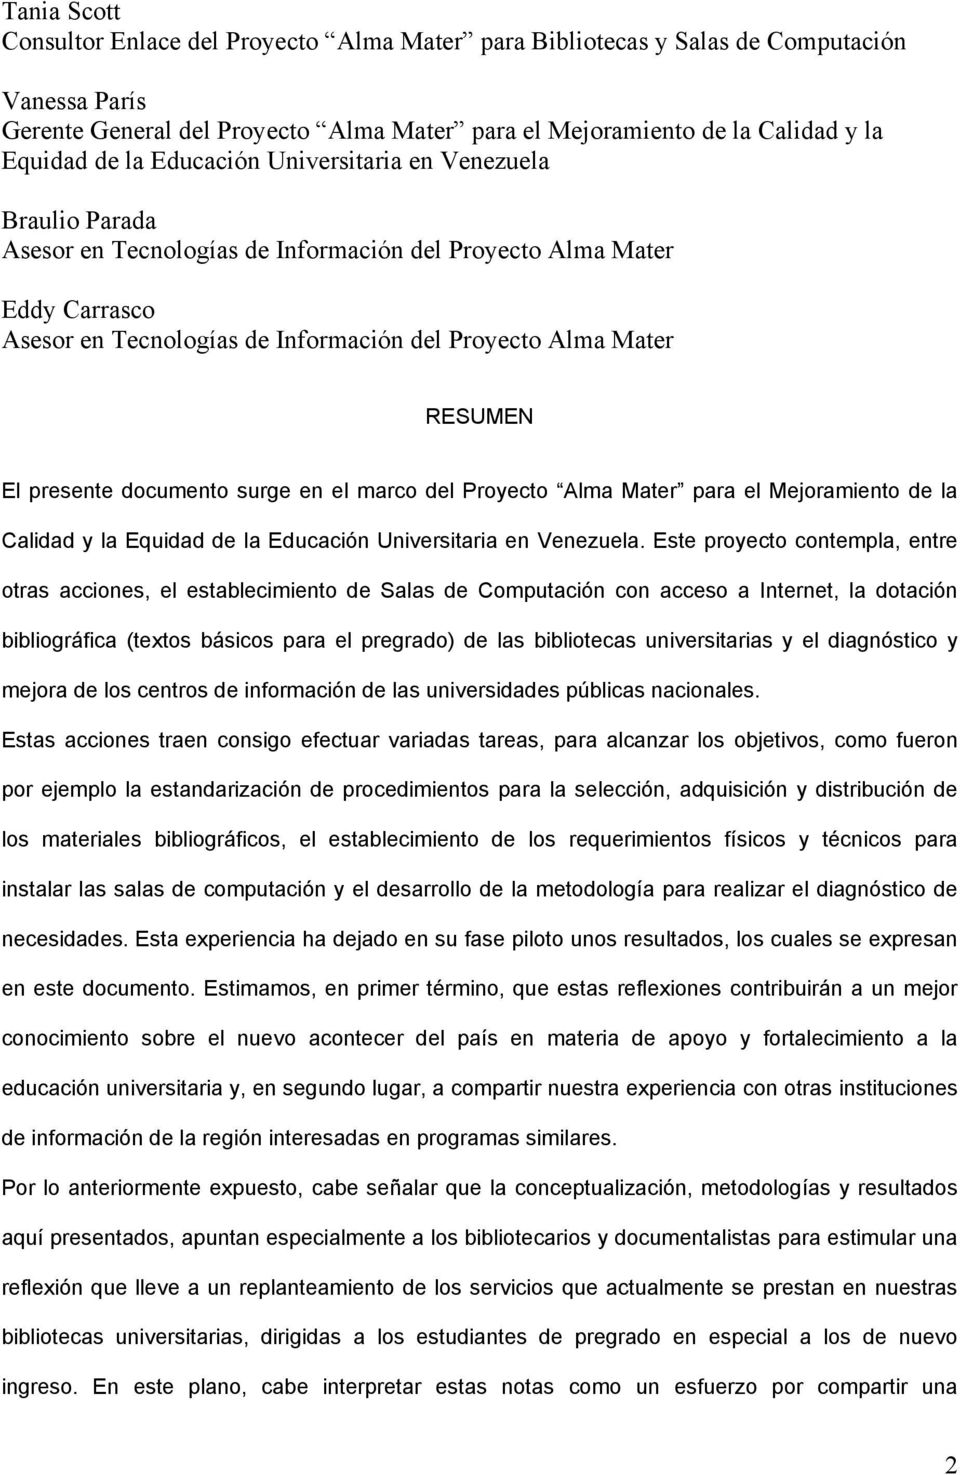 El presente documento surge en el marco del Proyecto Alma Mater para el Mejoramiento de la Calidad y la Equidad de la Educación Universitaria en Venezuela.